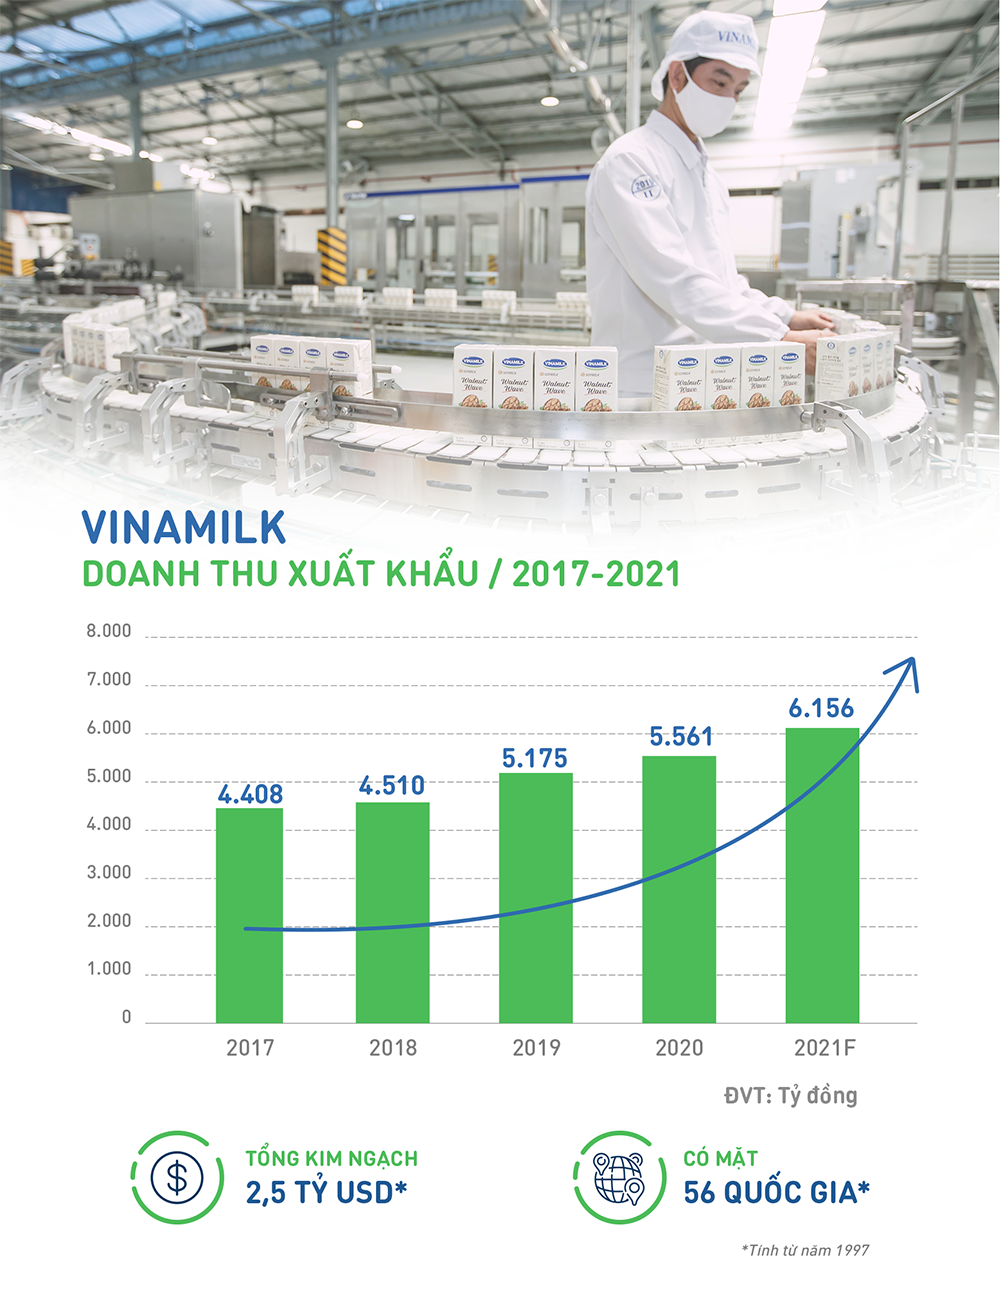 Doanh thu xuất khẩu của Vinamilk tăng trưởng trong 5 năm gần nhất, lũy kế đạt 2,5 tỉ USD kể từ khi bắt đầu xuất khẩu